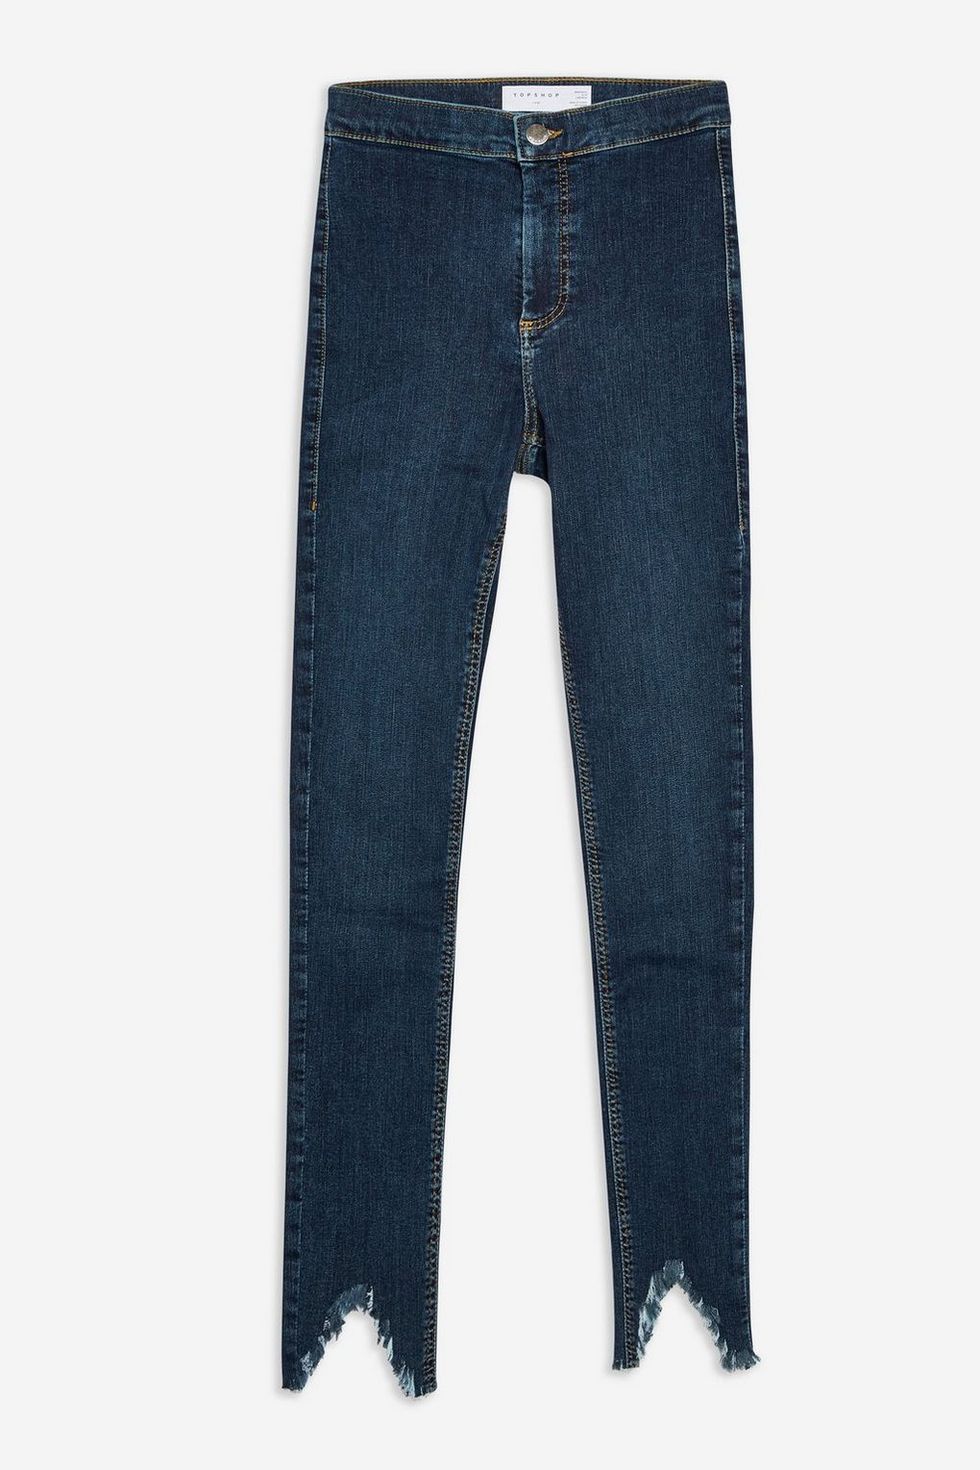 jeans-denim-split-hem